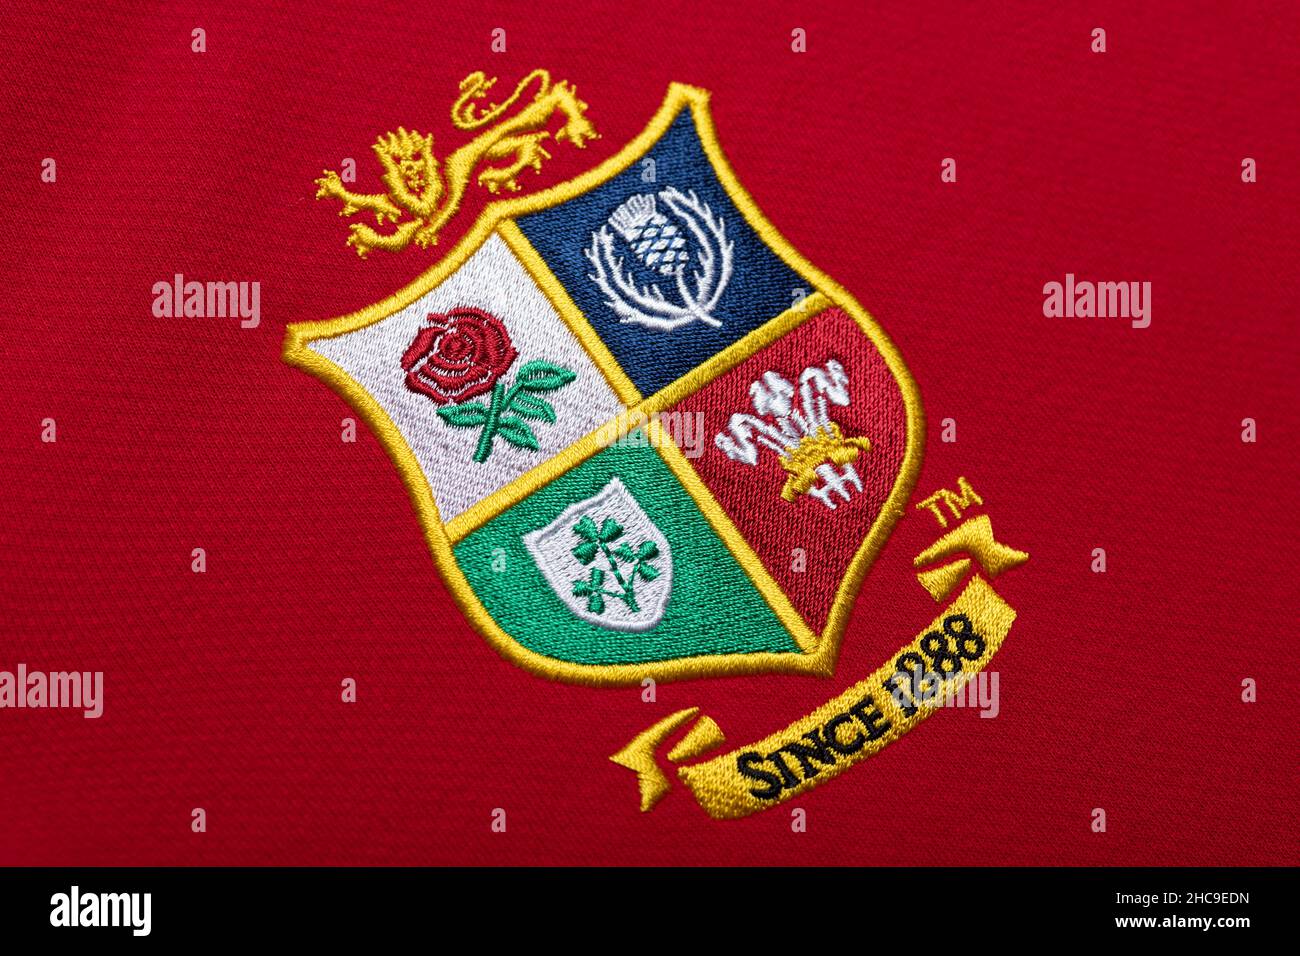 Primo piano della maglia del team di rugby dei Lions britannici e irlandesi Foto Stock